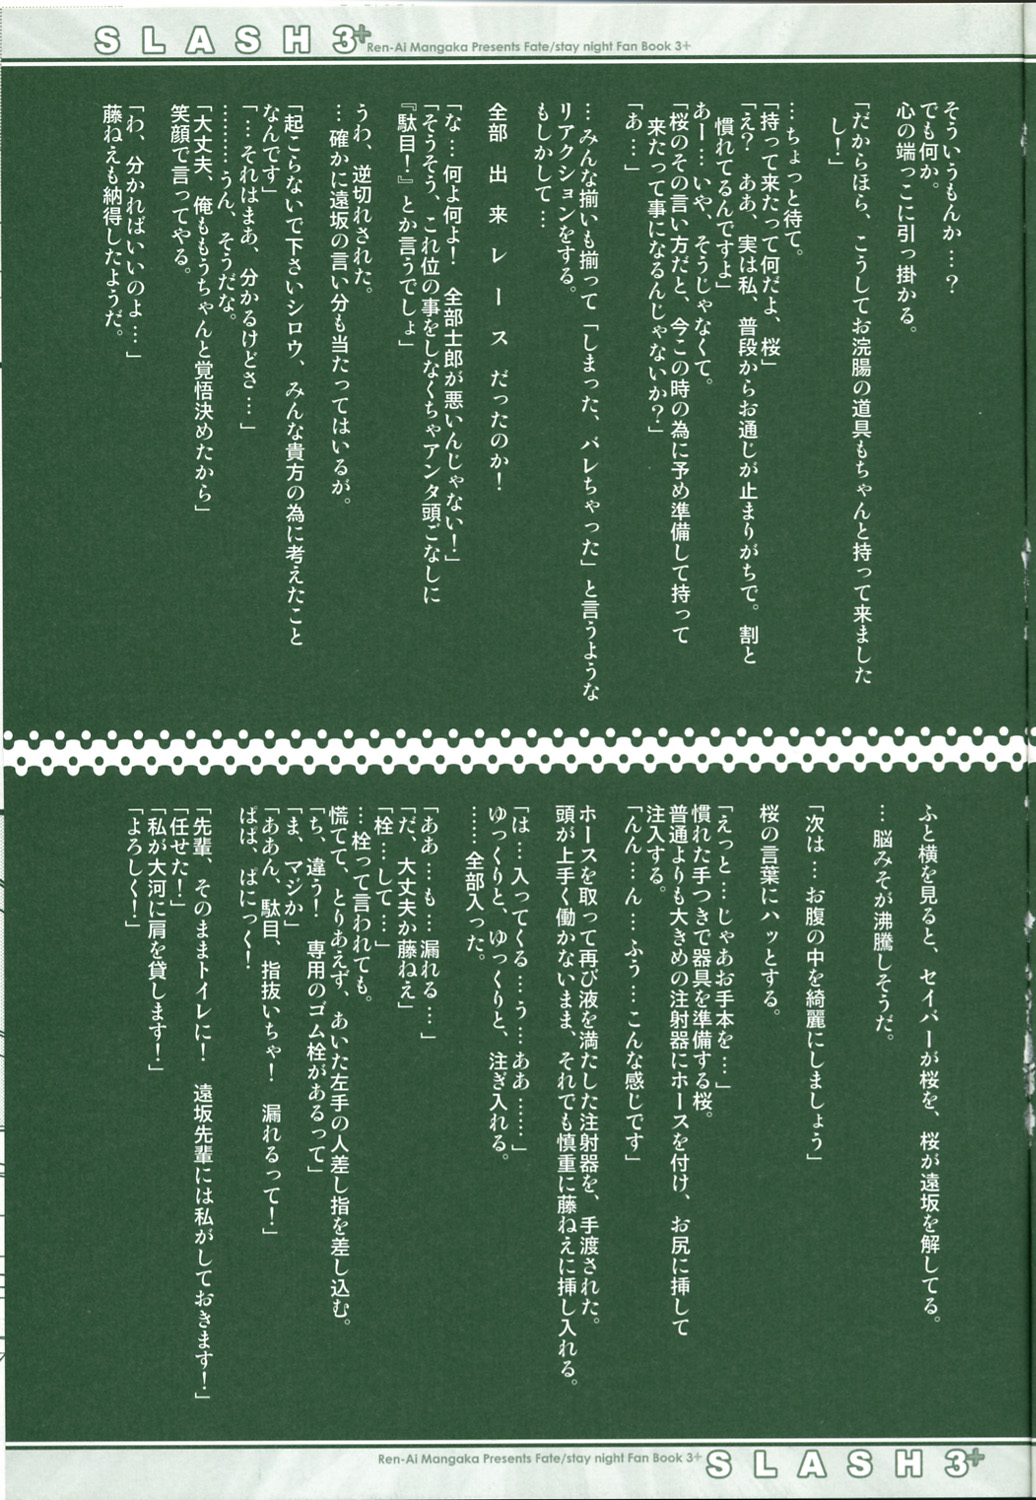 (CR36) [Renai Mangaka (Naruse Hirofume)] SLASH 3 + (Fate/stay night) page 11 full